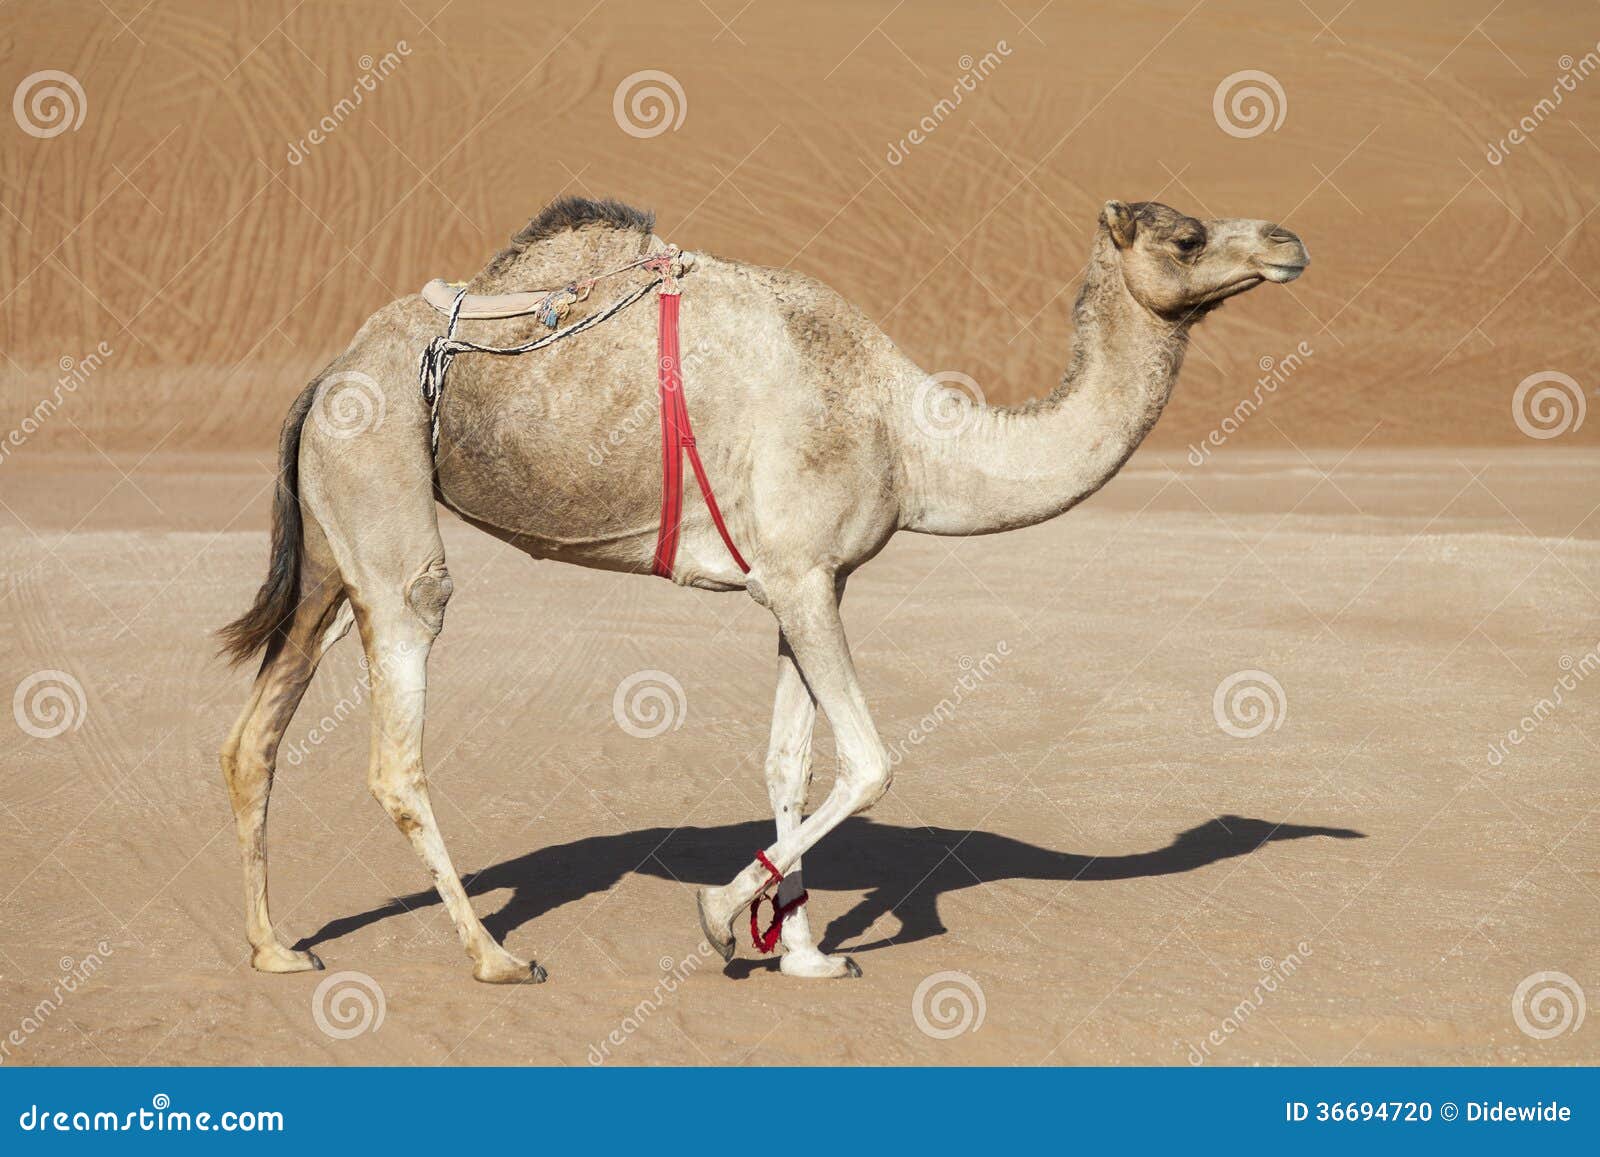 Wielbłąd w pustyni Oman. Chodzący wielbłąd w piasku pustynna fotografia brać dalej: listopad 04th, 2013